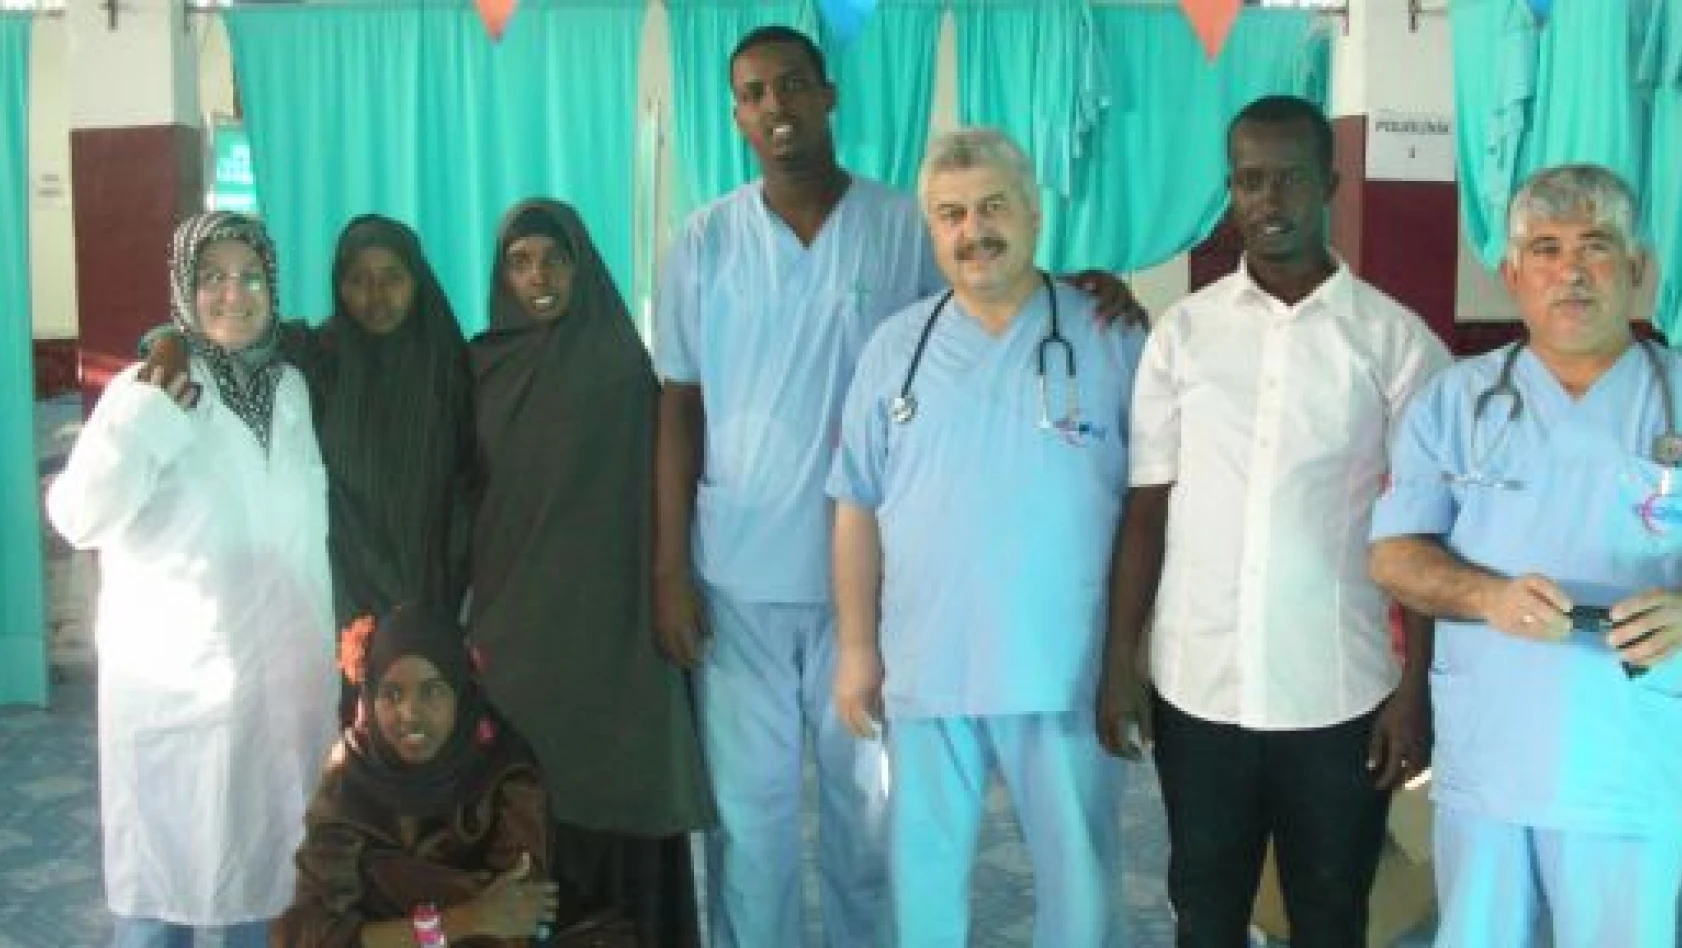 Gönüllü Türk hekimler kara kıtada 13 bin kişinin gözünü açtı